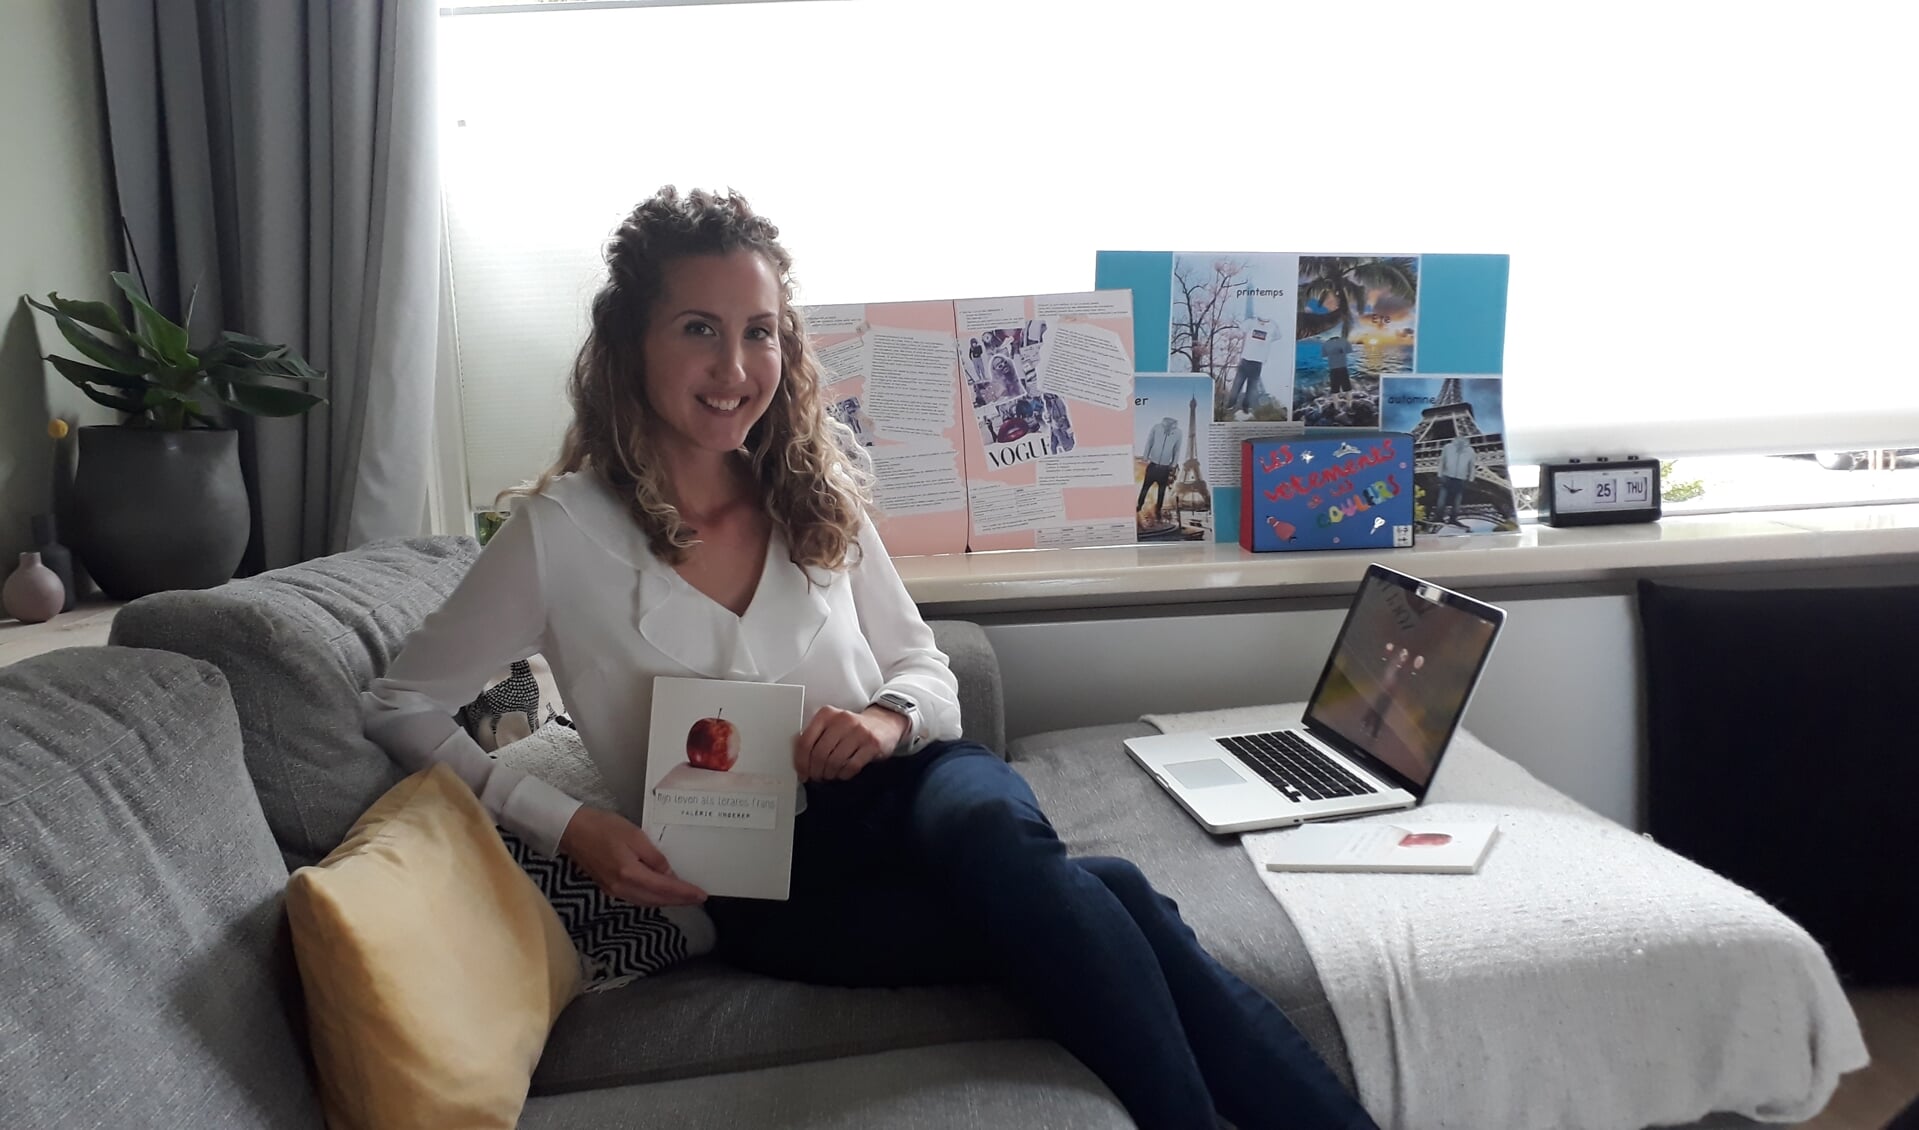 Valérie Ungerer wil met haar boek de leuke kanten van het onderwijs laten zien. 